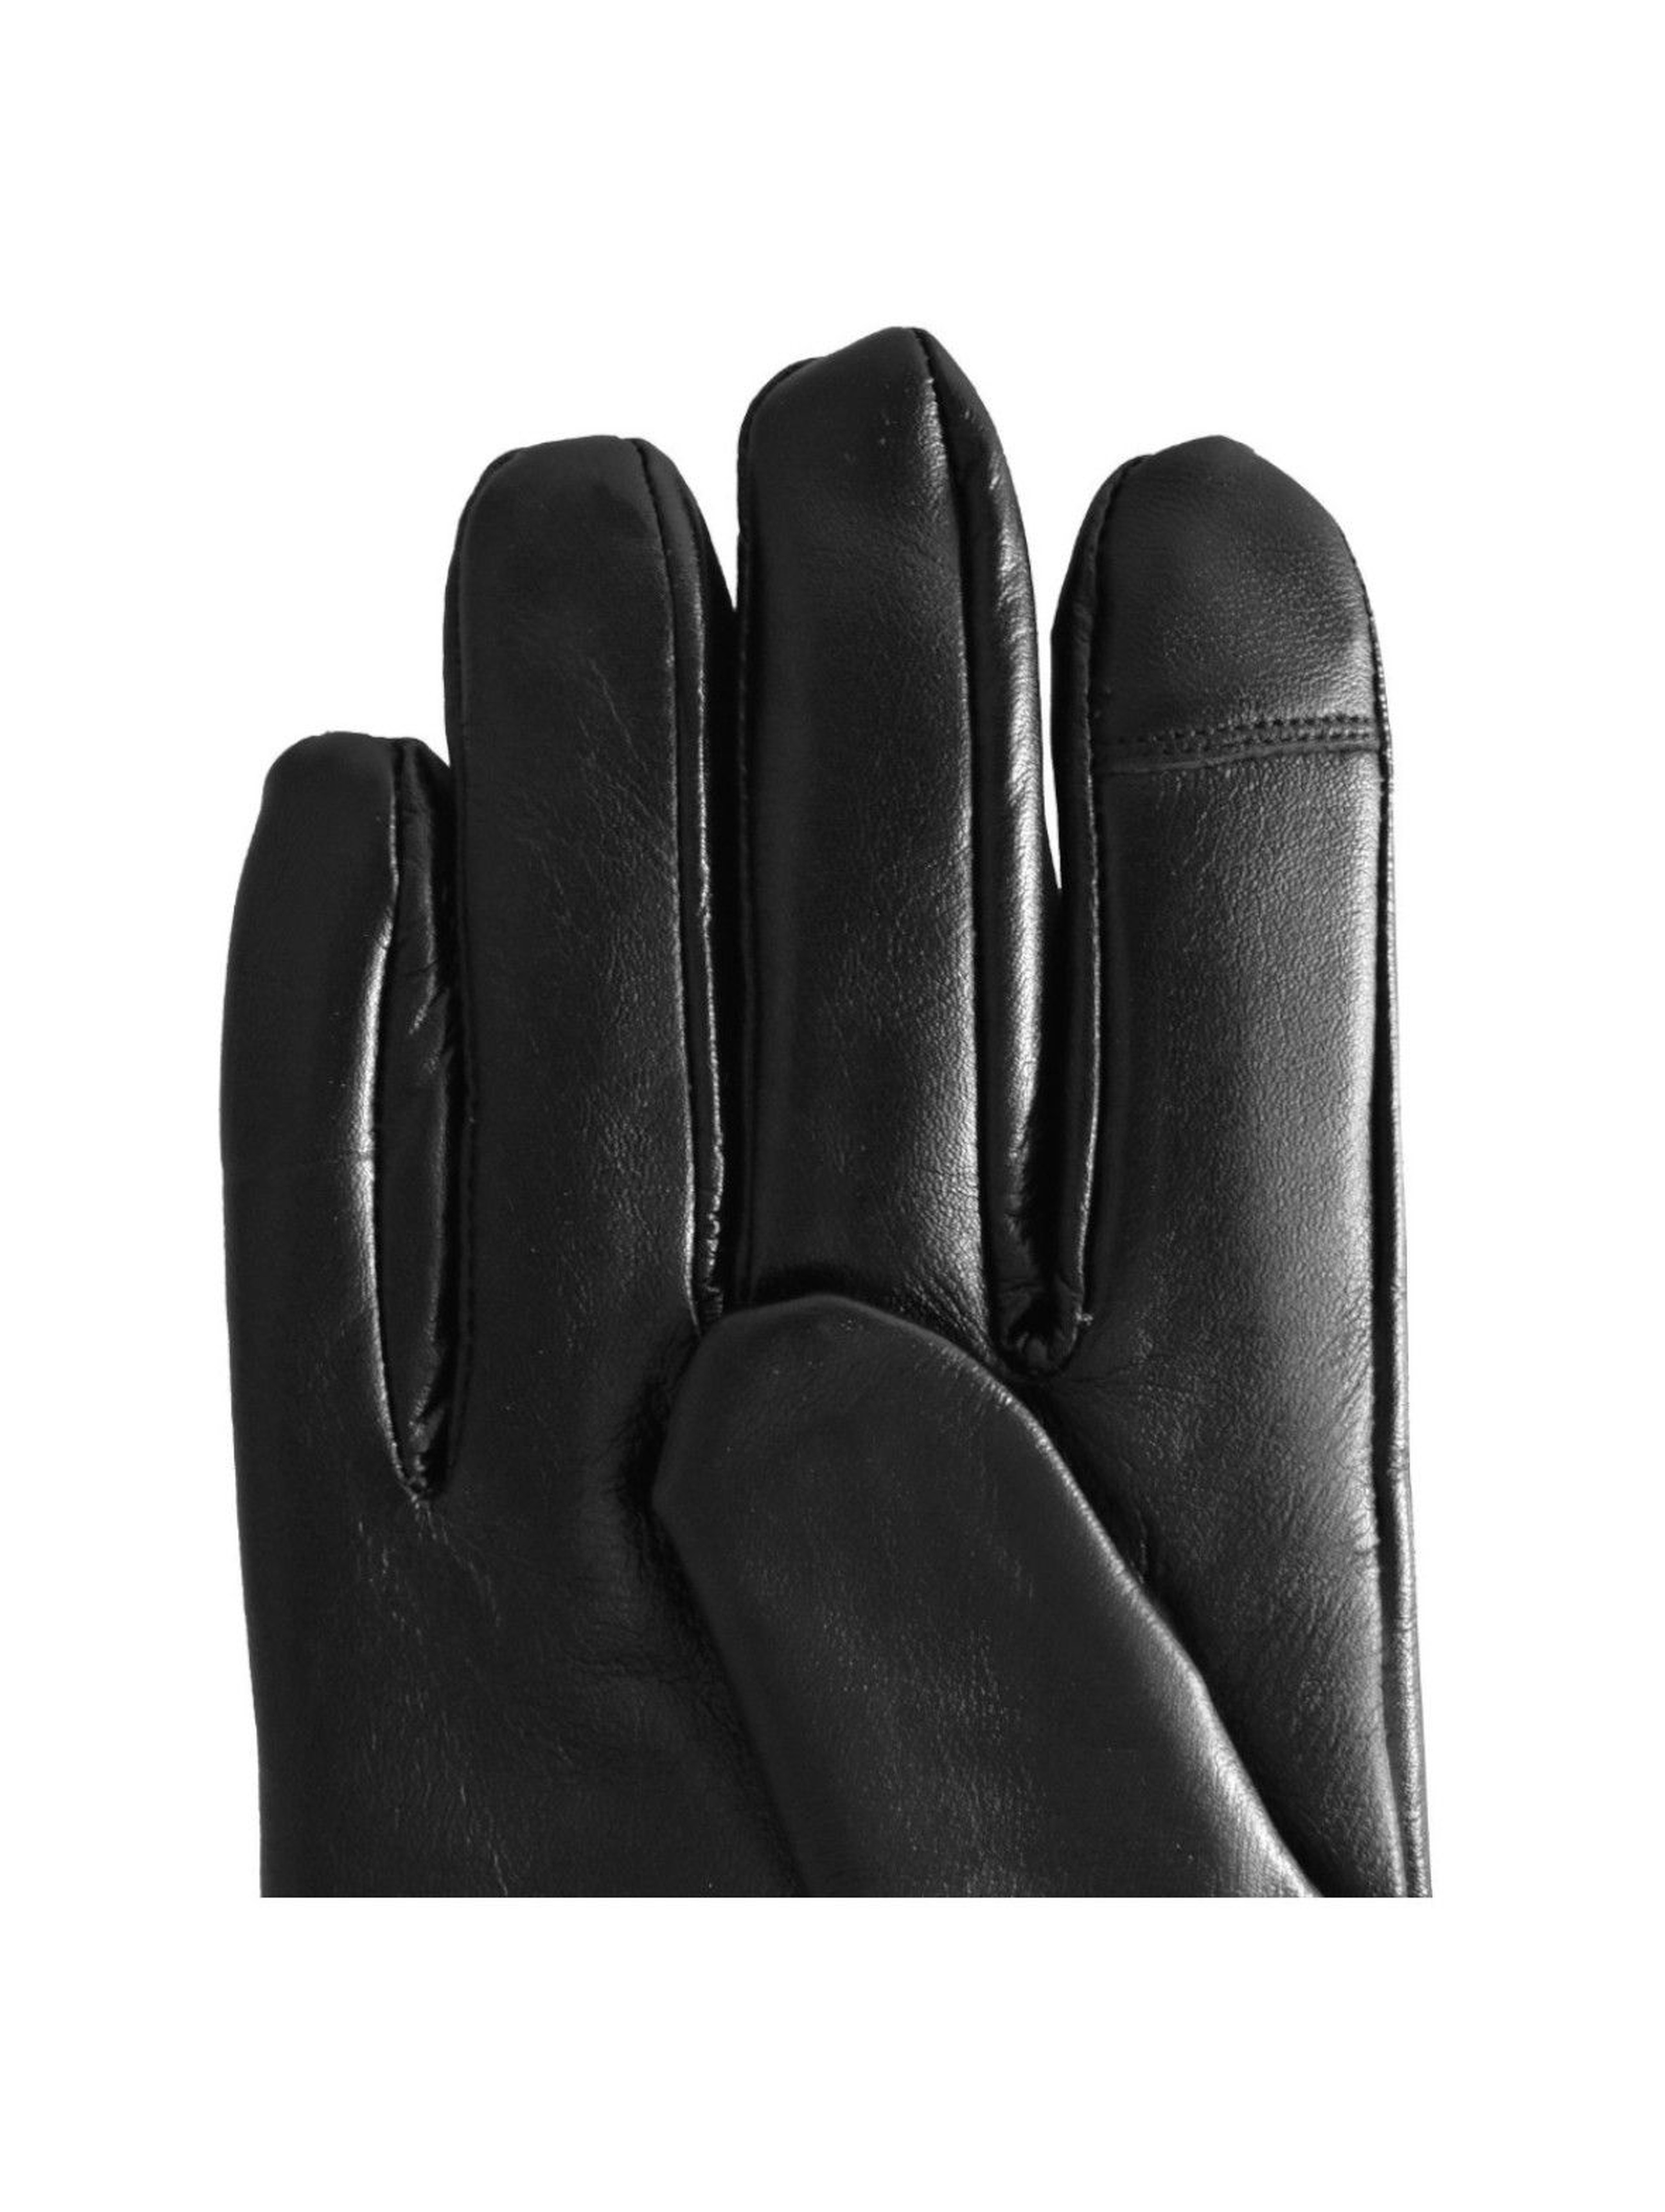 Rękawiczki męskie skórzane antybakteryjne - czarne roz. L